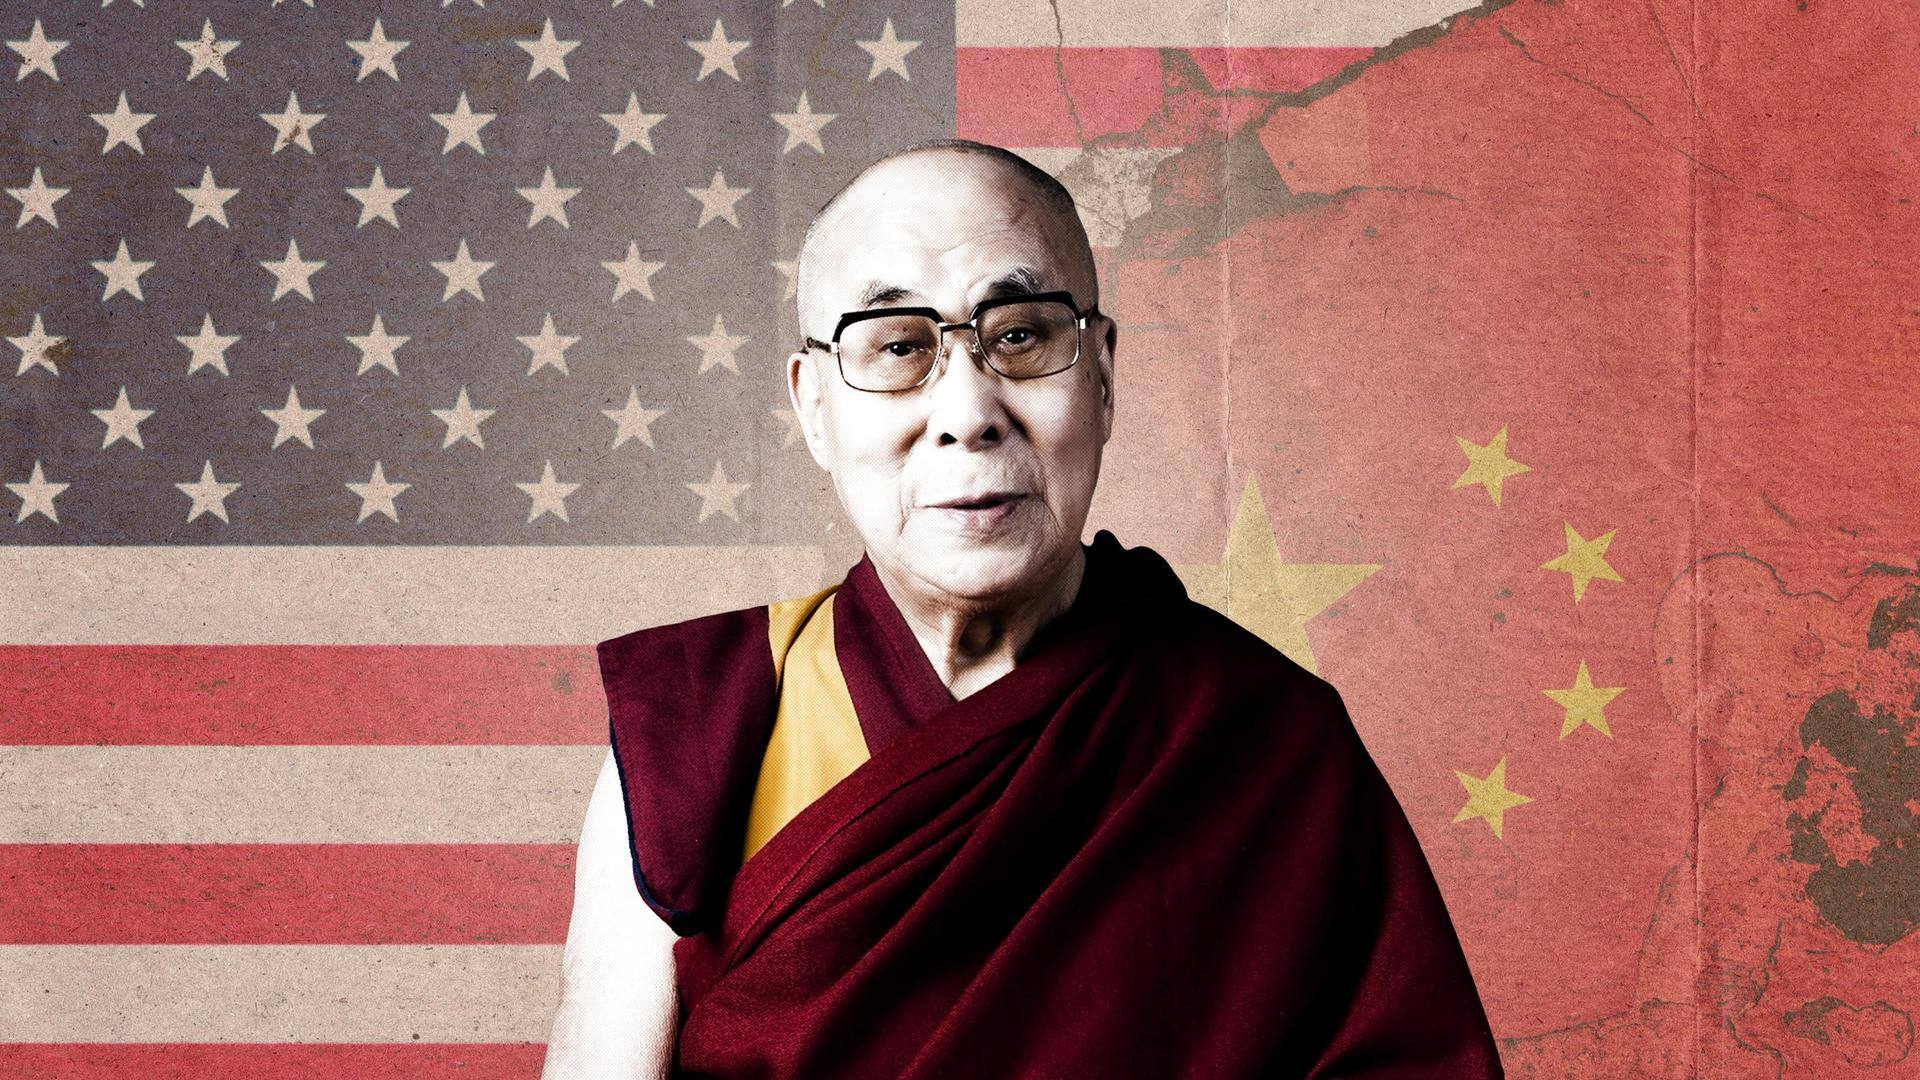 US official meets Dalai Lama; China calls it 'pure offense'